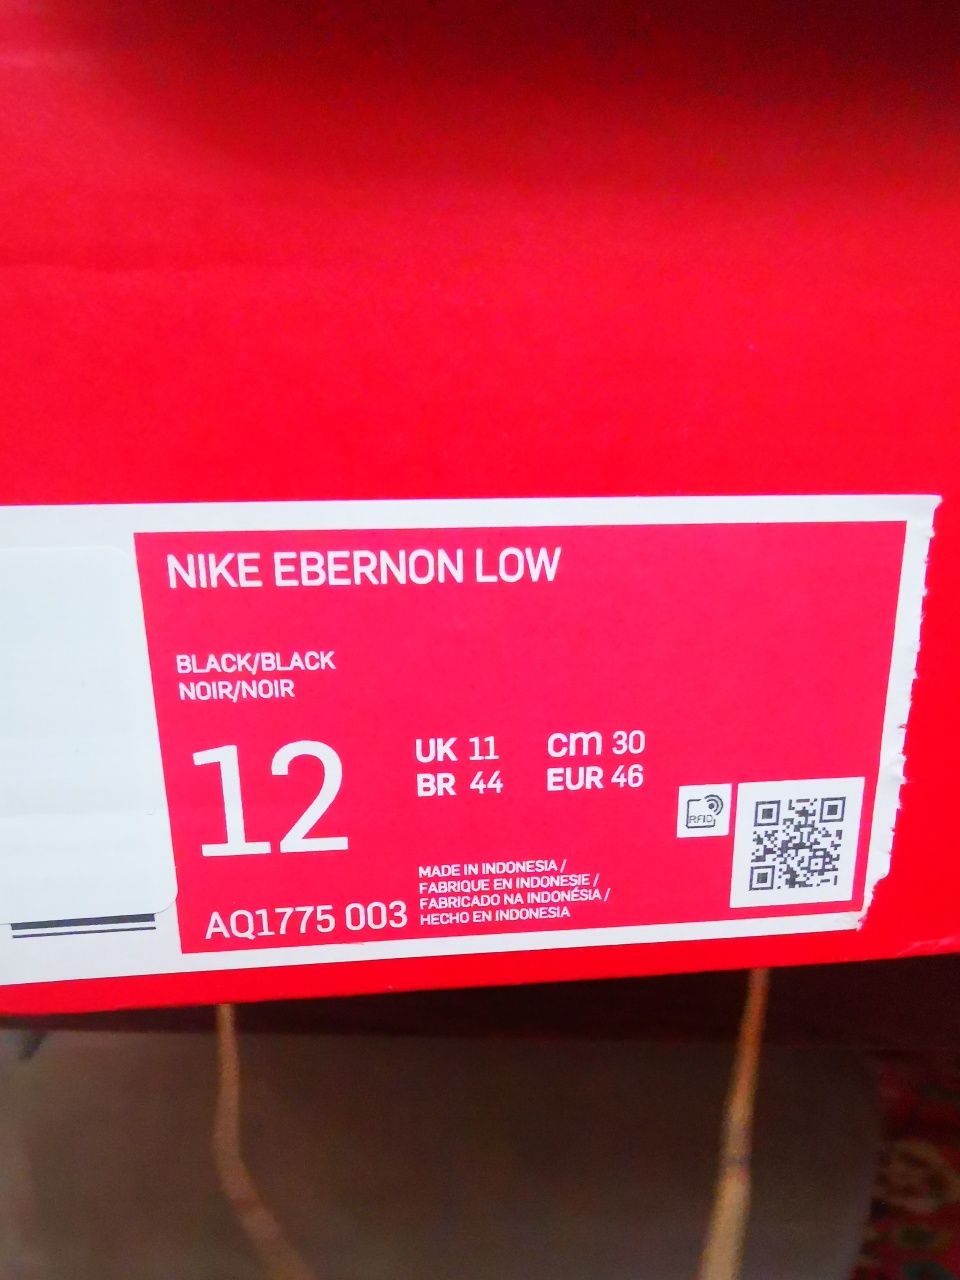 Nike Ebernon Low - Эйр Форсы для бедных студентов!